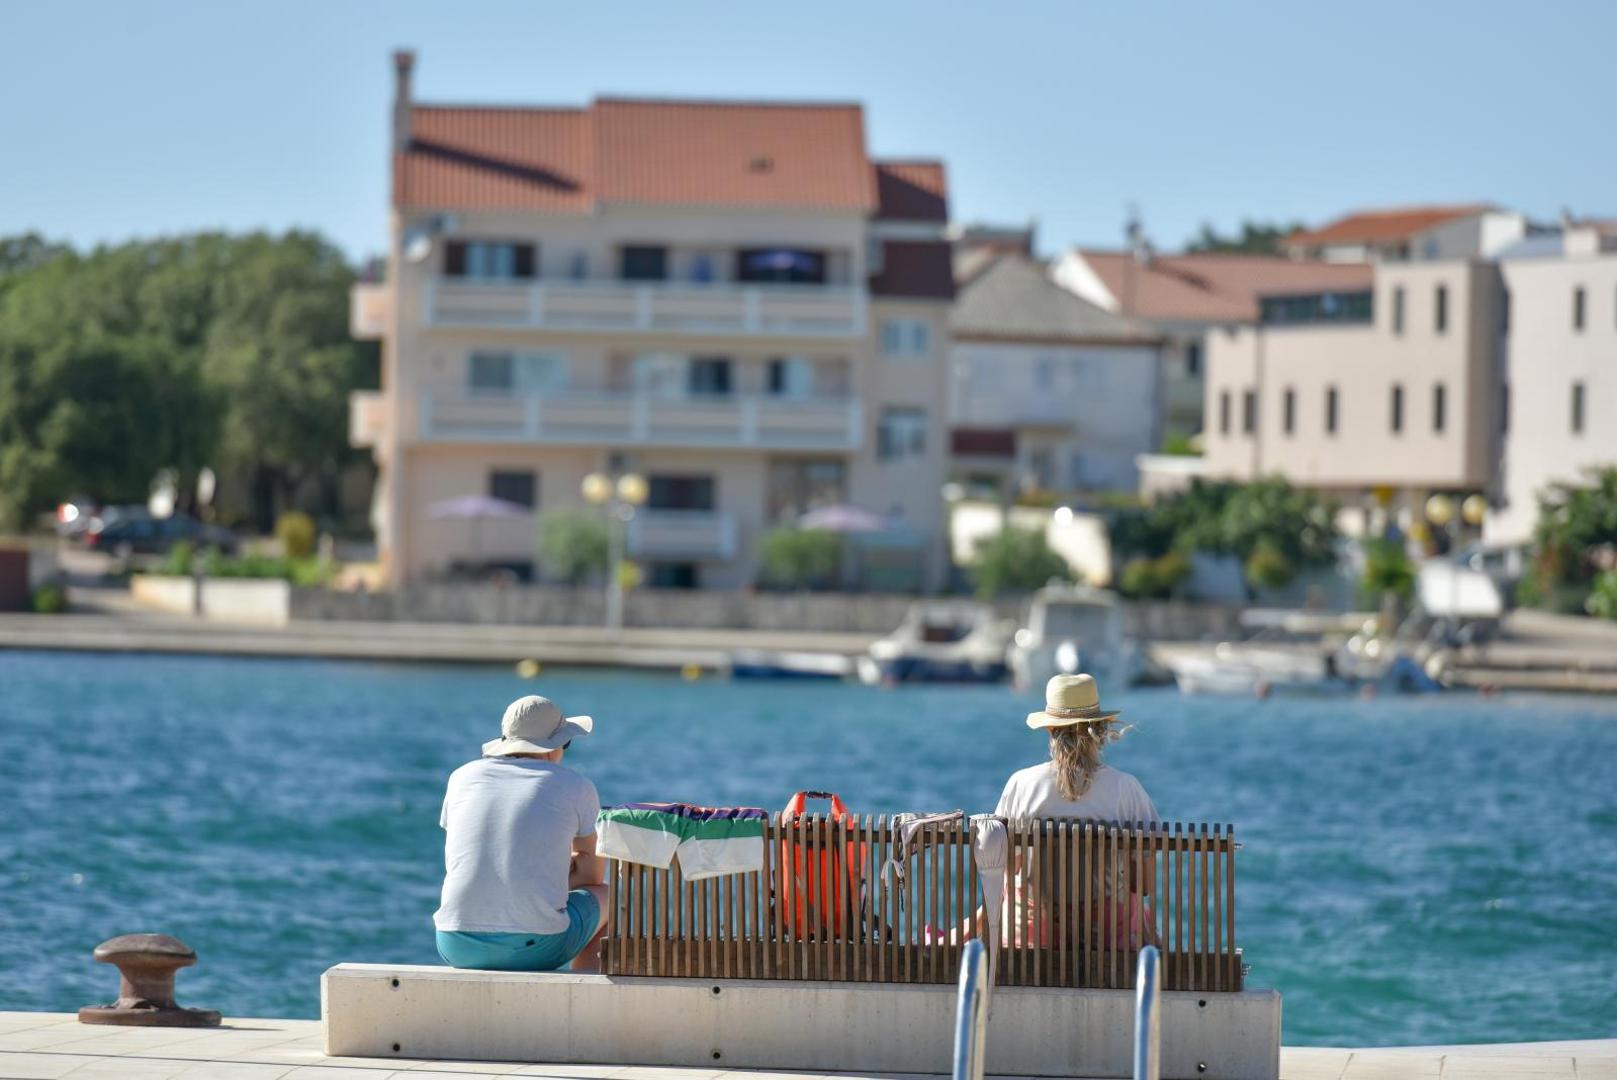 08.07.2020., Zadar - Plaza u Petrcanima puna je mahom stranih gostiju. 
Photo: Dino Stanin/PixSell